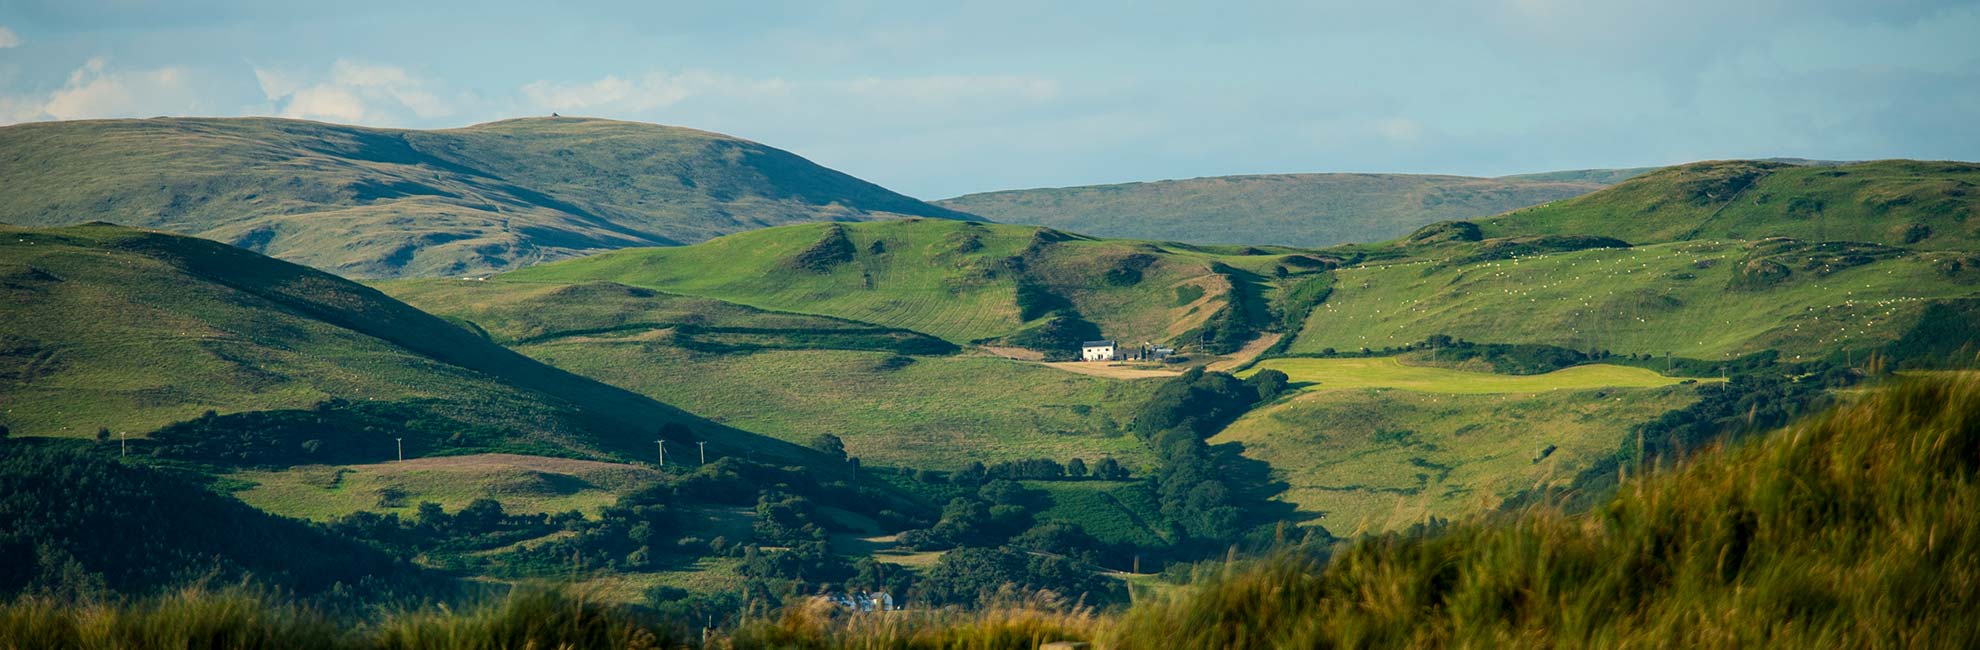 Views across Welsh hills